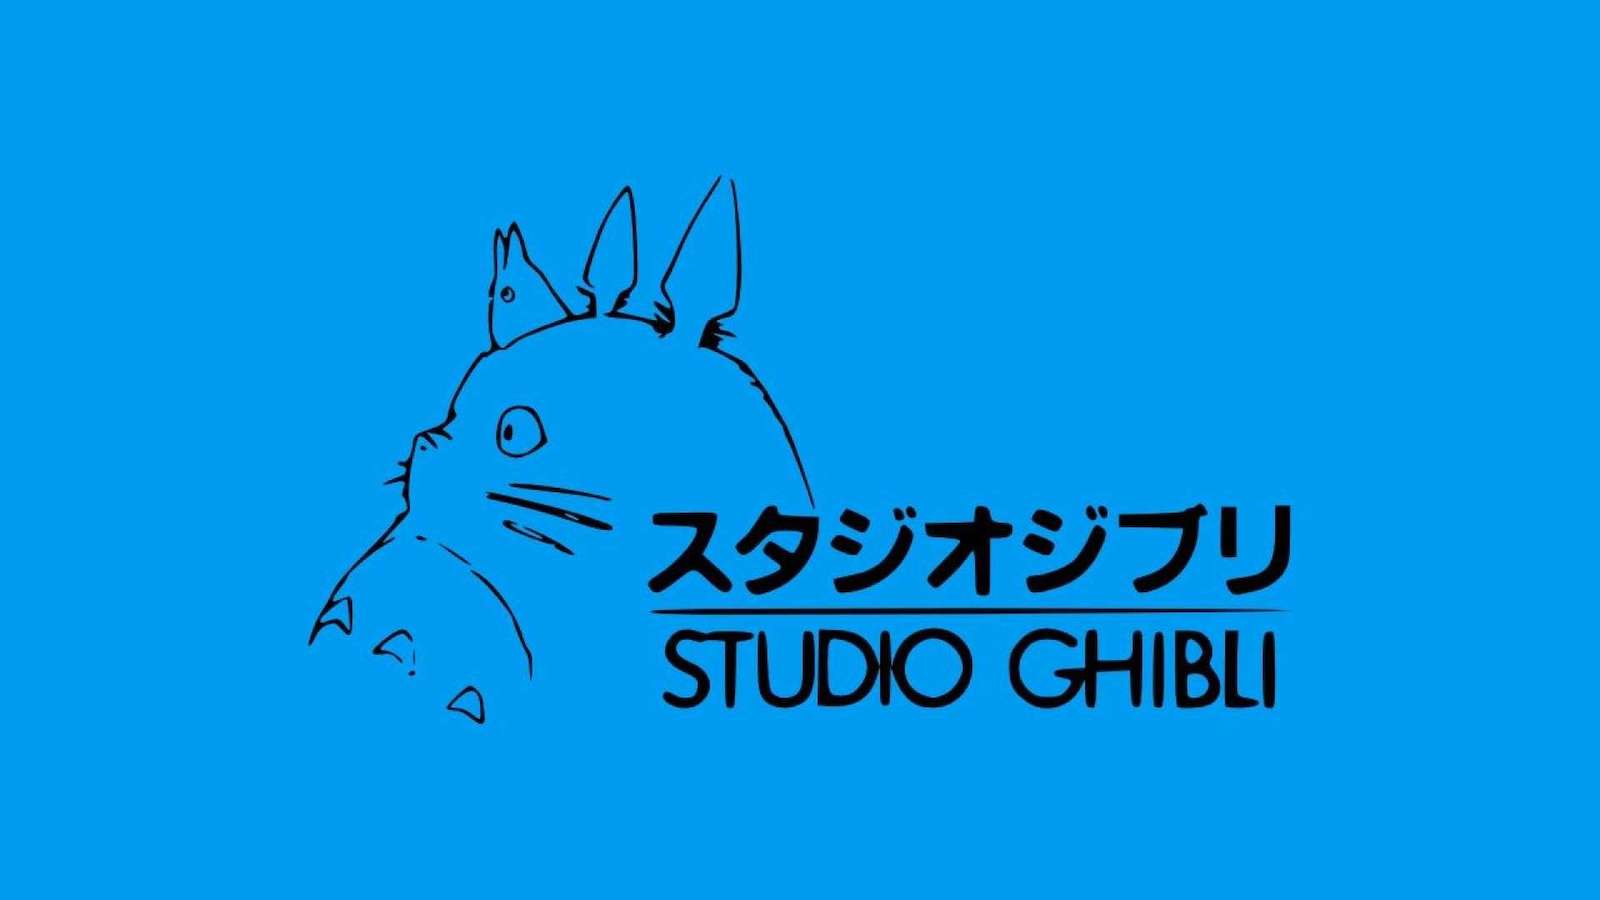 Studio Ghibli: Nippon Televison assume il controllo dell'azienda di Hayao Miyazaki